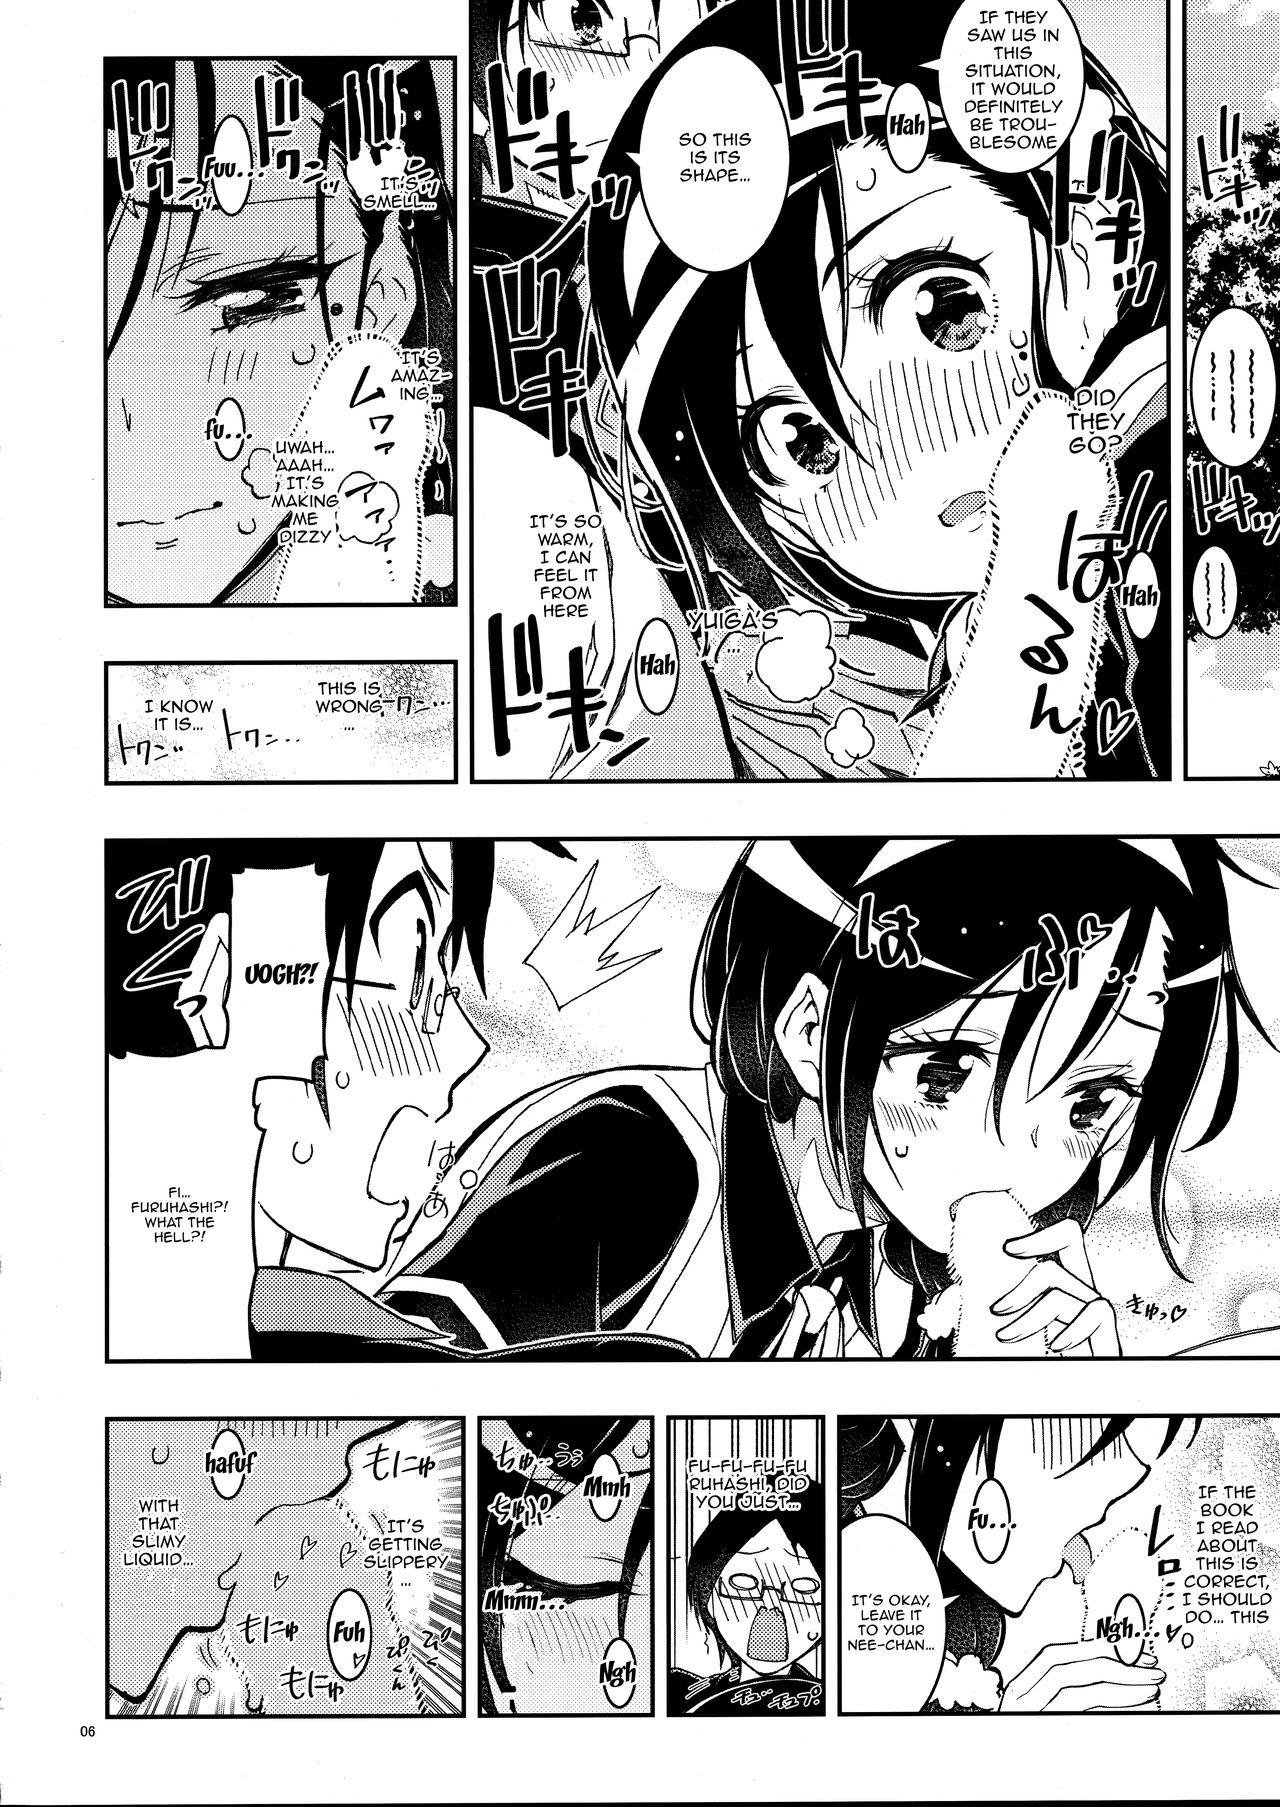 Hot Girl BOKUTACHIHA FUMINOMO ASUMIMO KAWAII | Fumino and Asumi are so Cute - Bokutachi wa benkyou ga dekinai Plug - Page 5